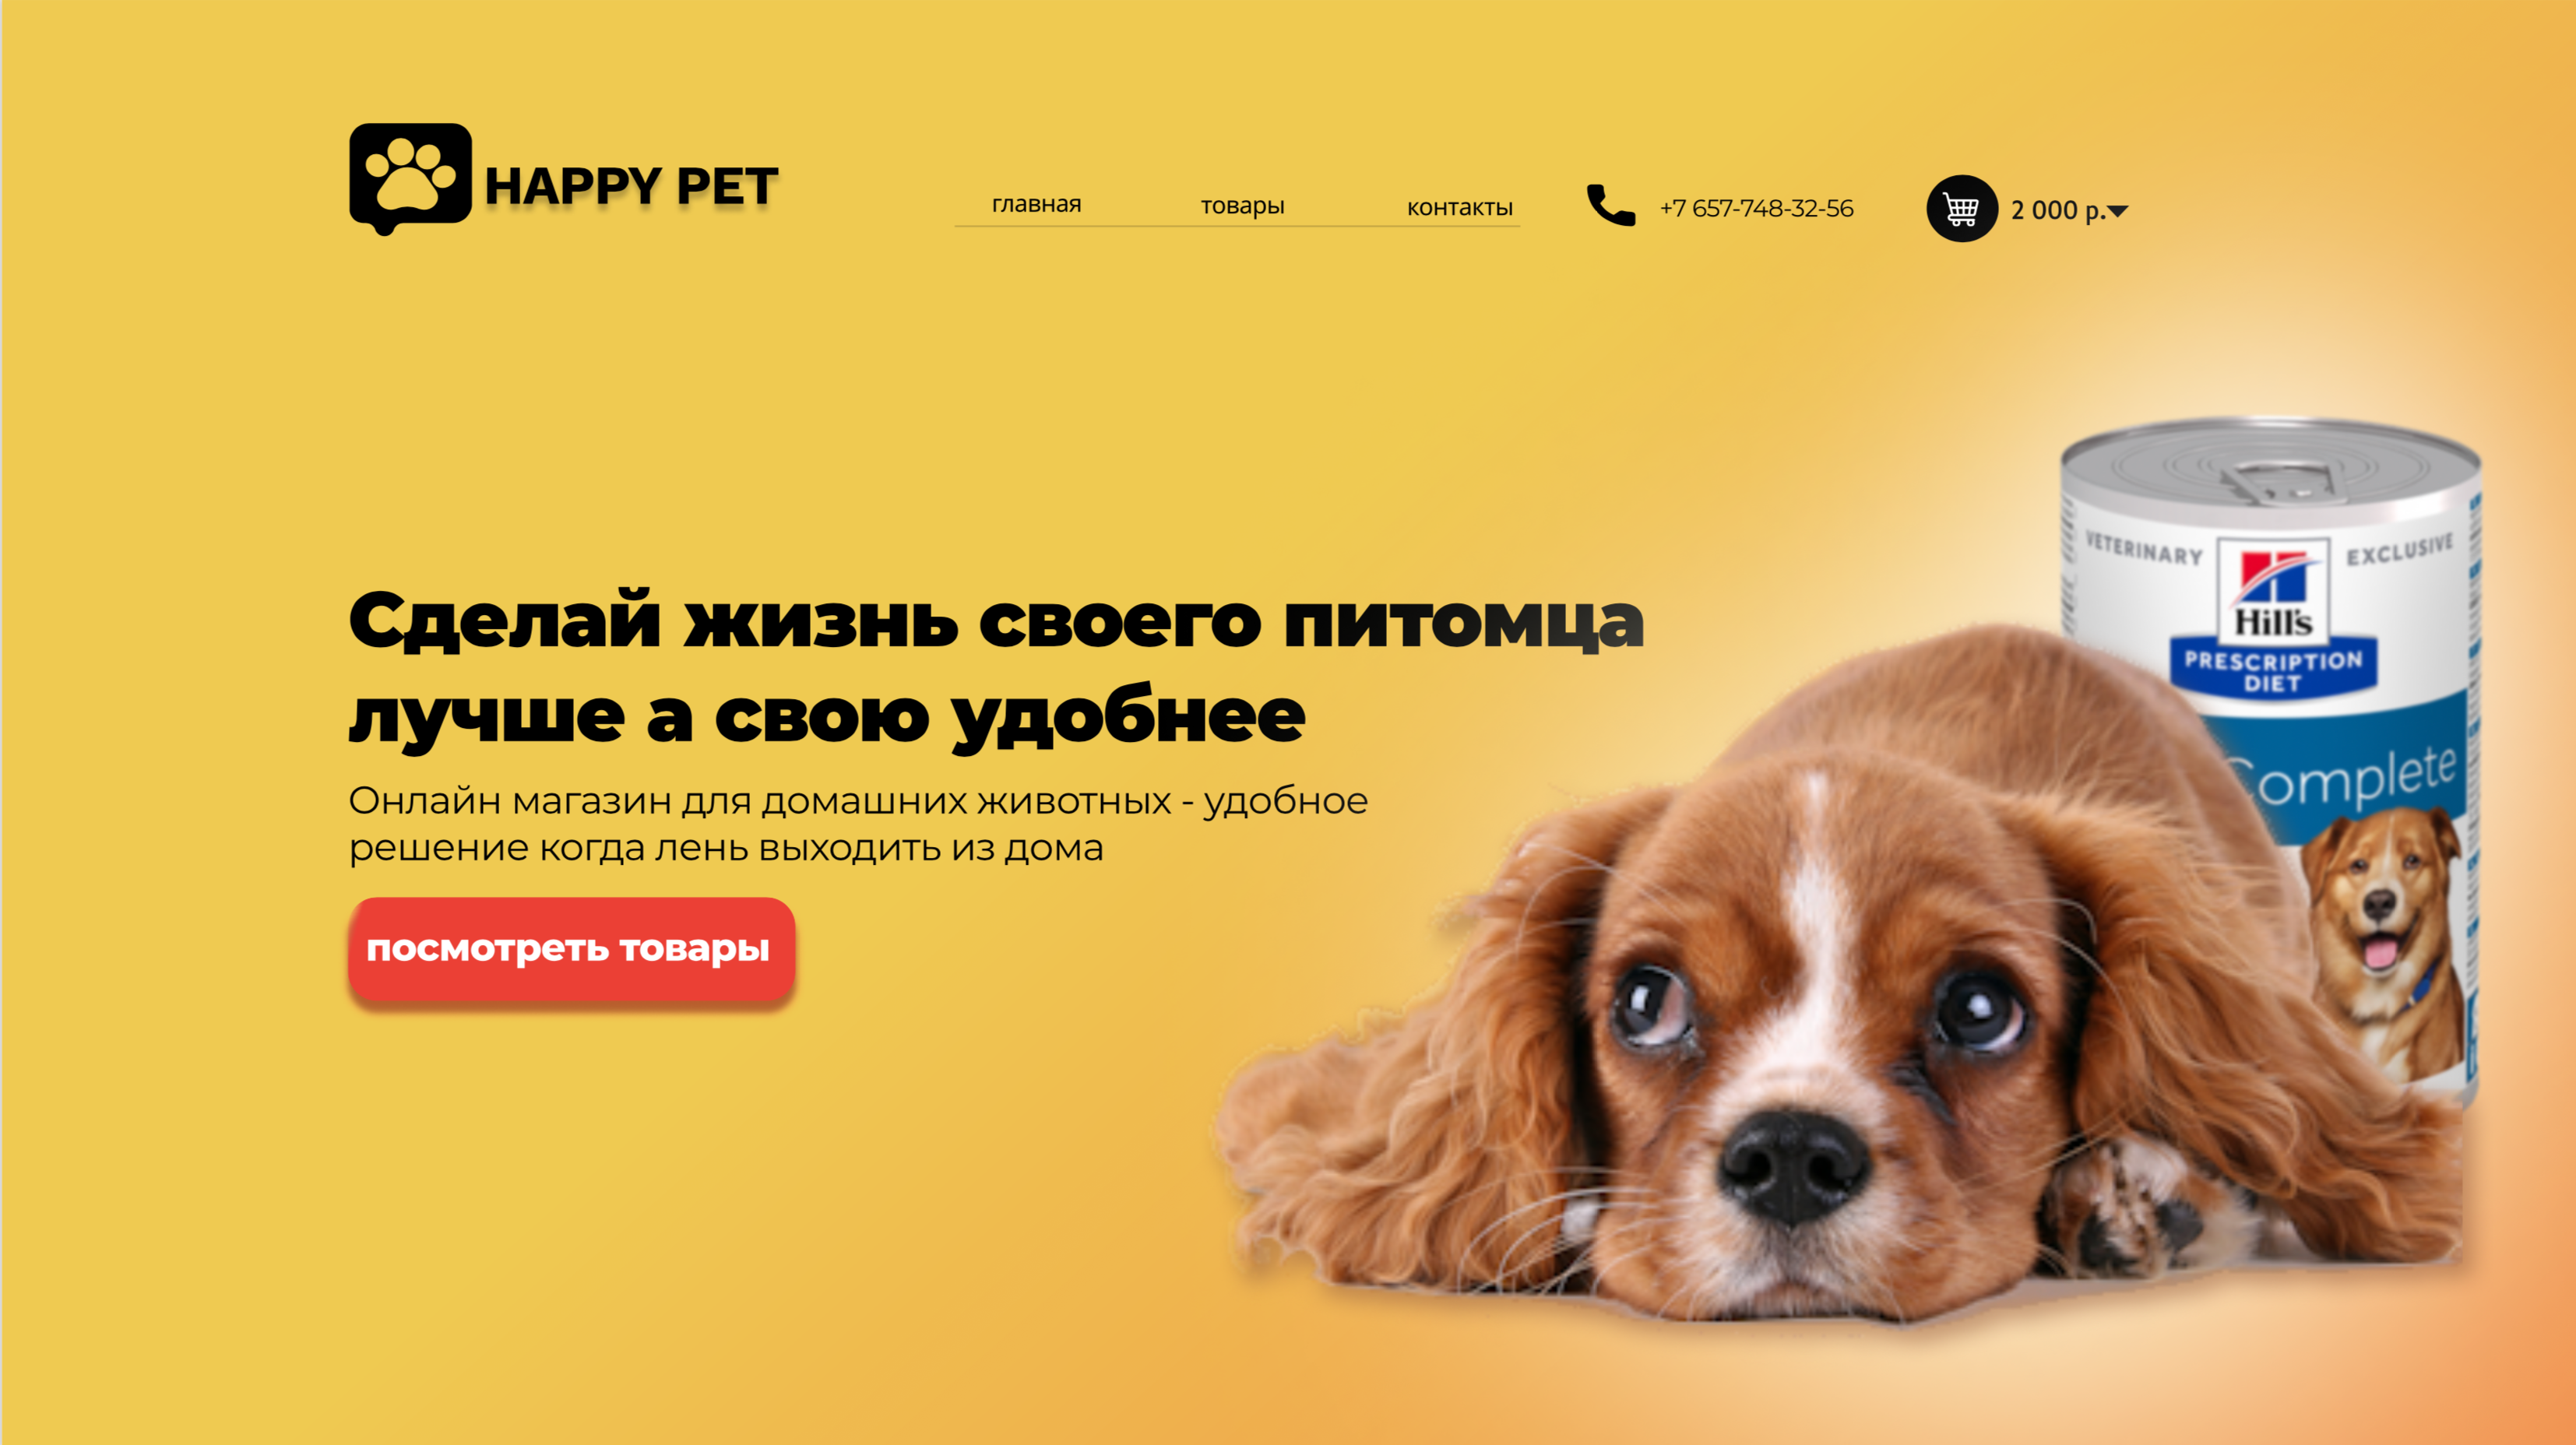 Главная страница для сайта продажи товаров для домашних животных